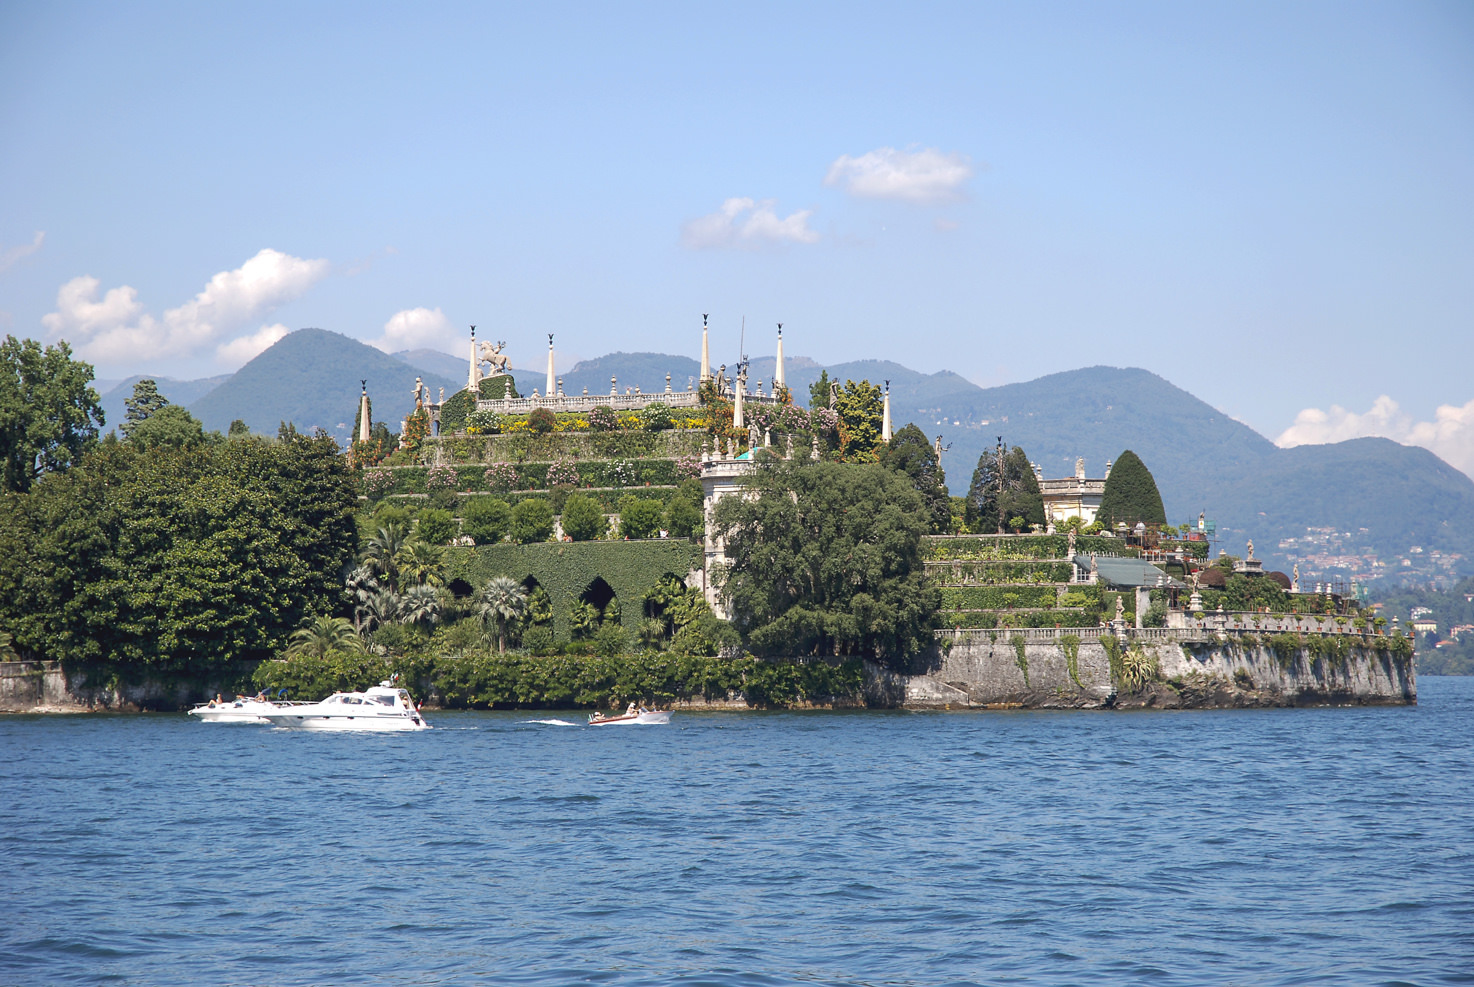 Isola Bella, island on Lake Maggiore